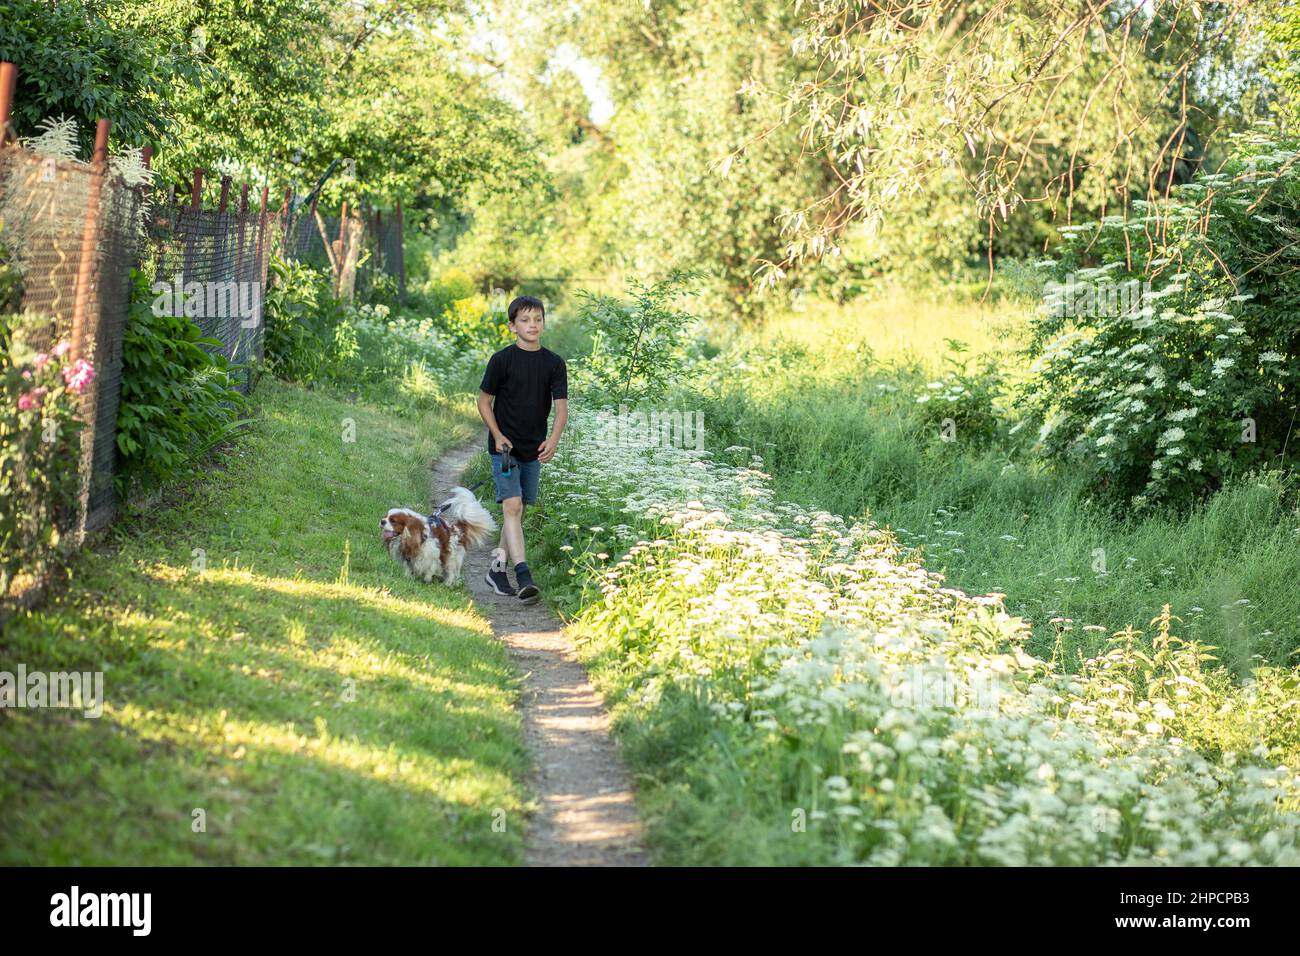 Petit garçon et chien compagnon préféré coker ami spaniel marchant dans le jardin, arbres, verdure, rue. Jour de lumière à l'extérieur Banque D'Images